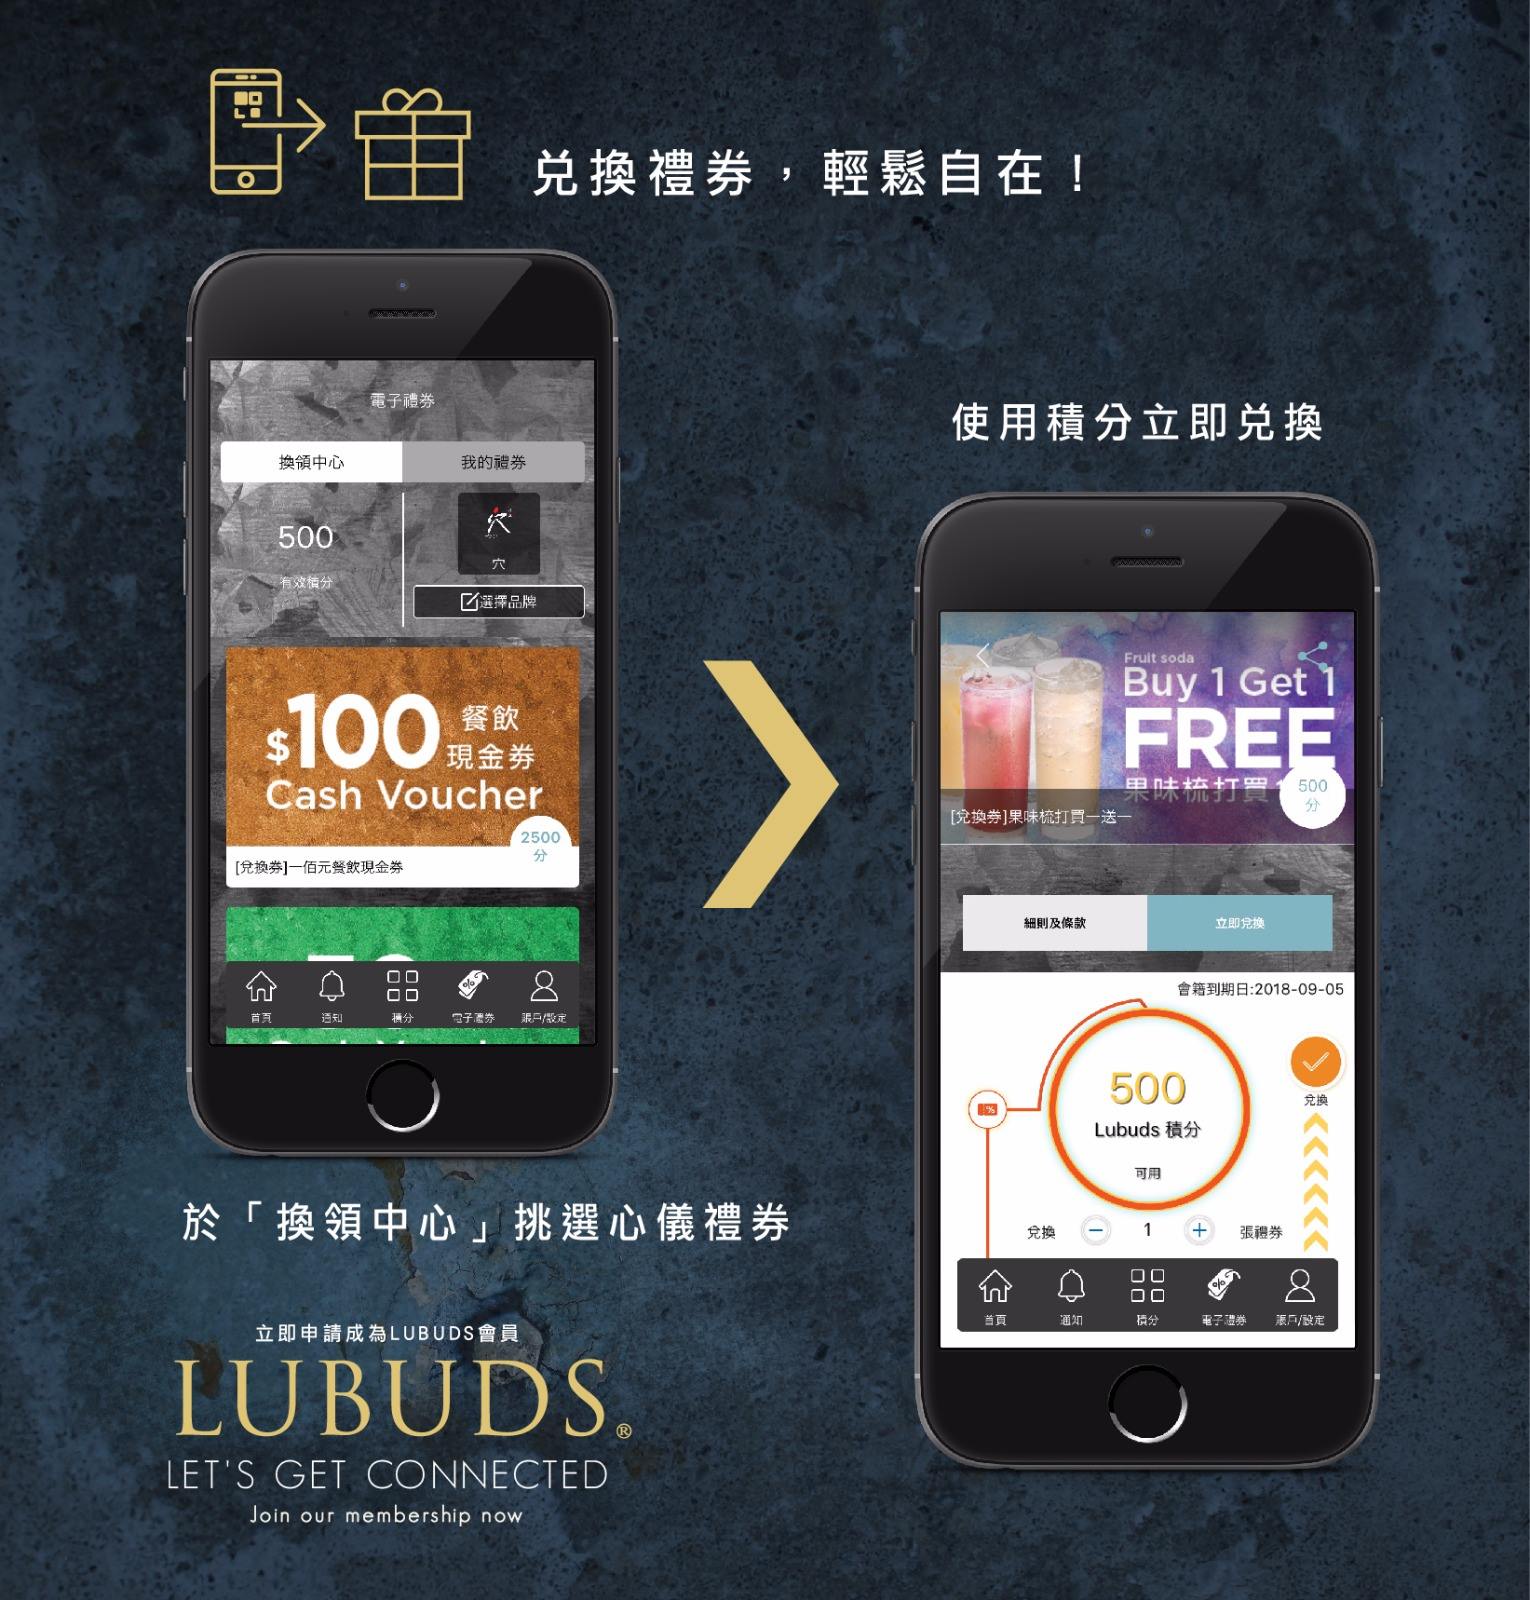 憑LUBUDS®會員App消費儲分，可以用積分換領各式電子餐飲禮券，包括現金券、免費食品及飲品等，不定期更新，帶俾您重重驚喜！